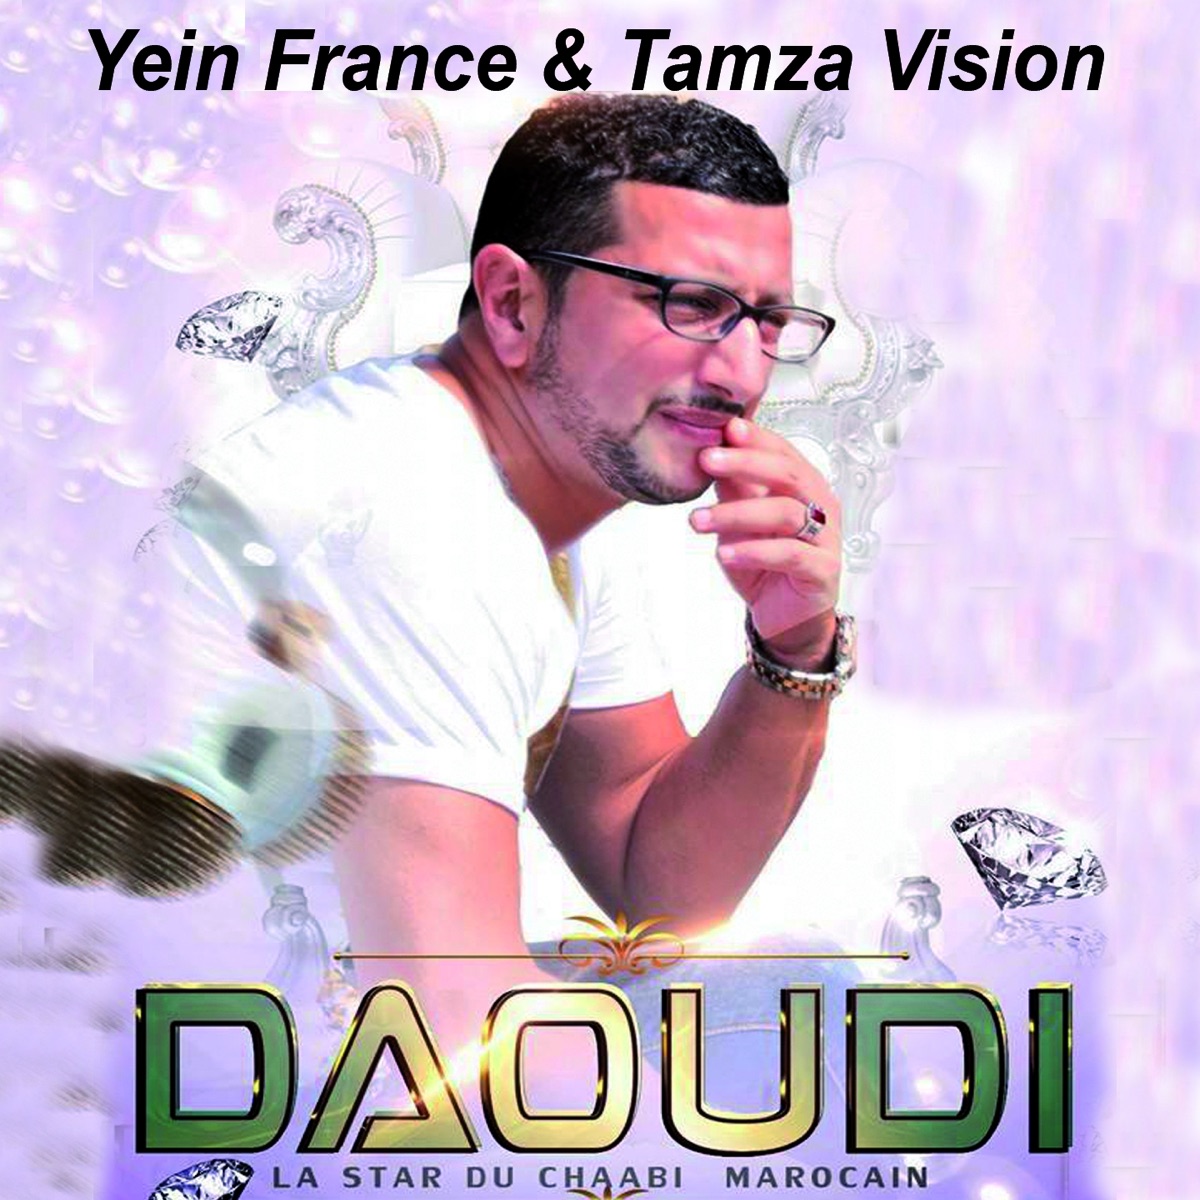 Best of Daoudi (Chaâbi Marocain) - Album by Daoudi - Apple Music